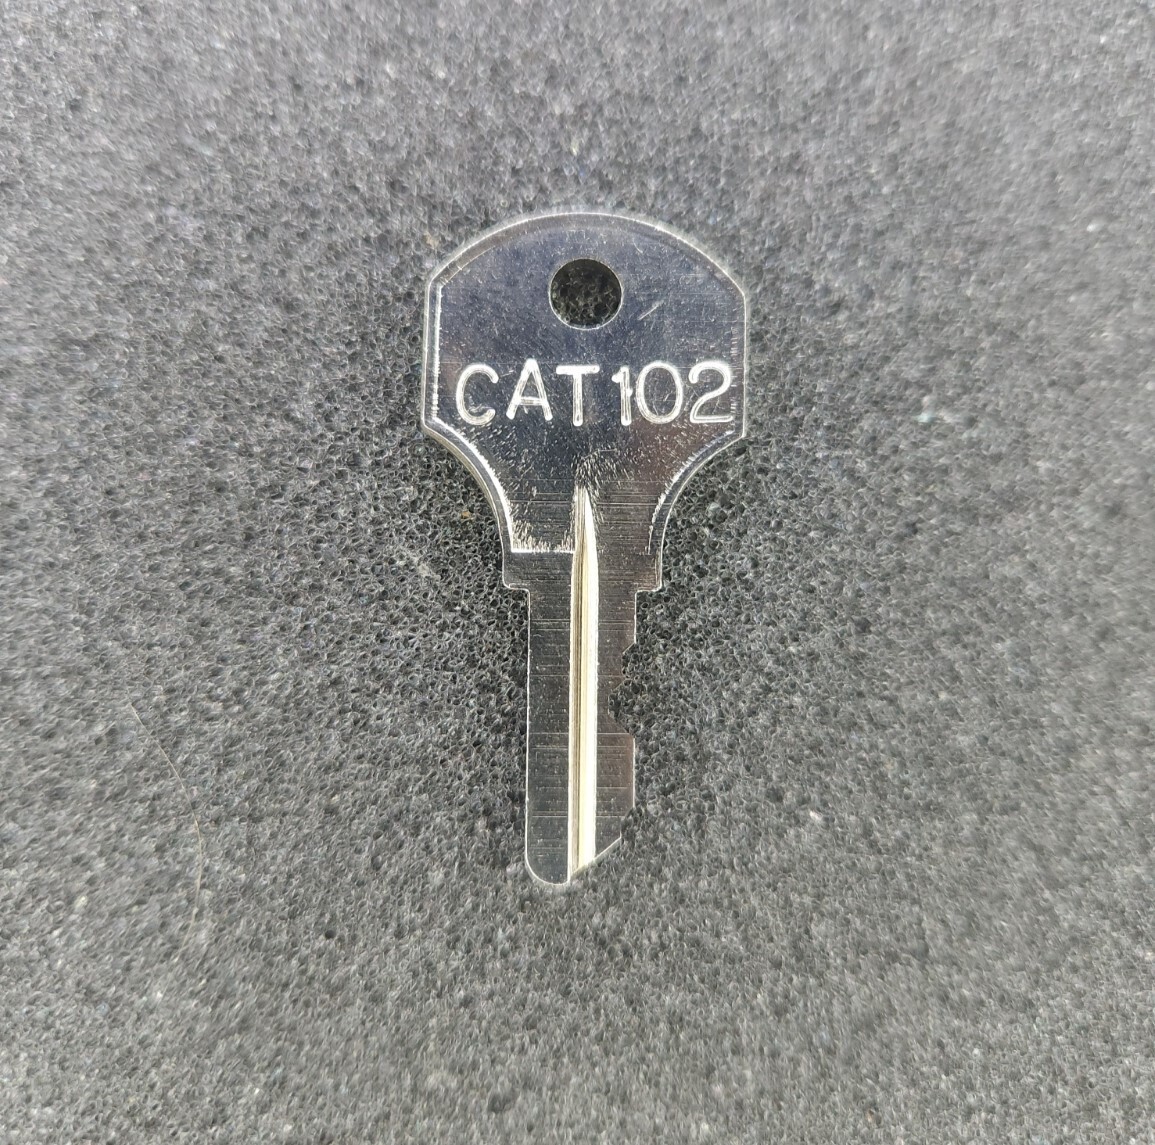 CAT102